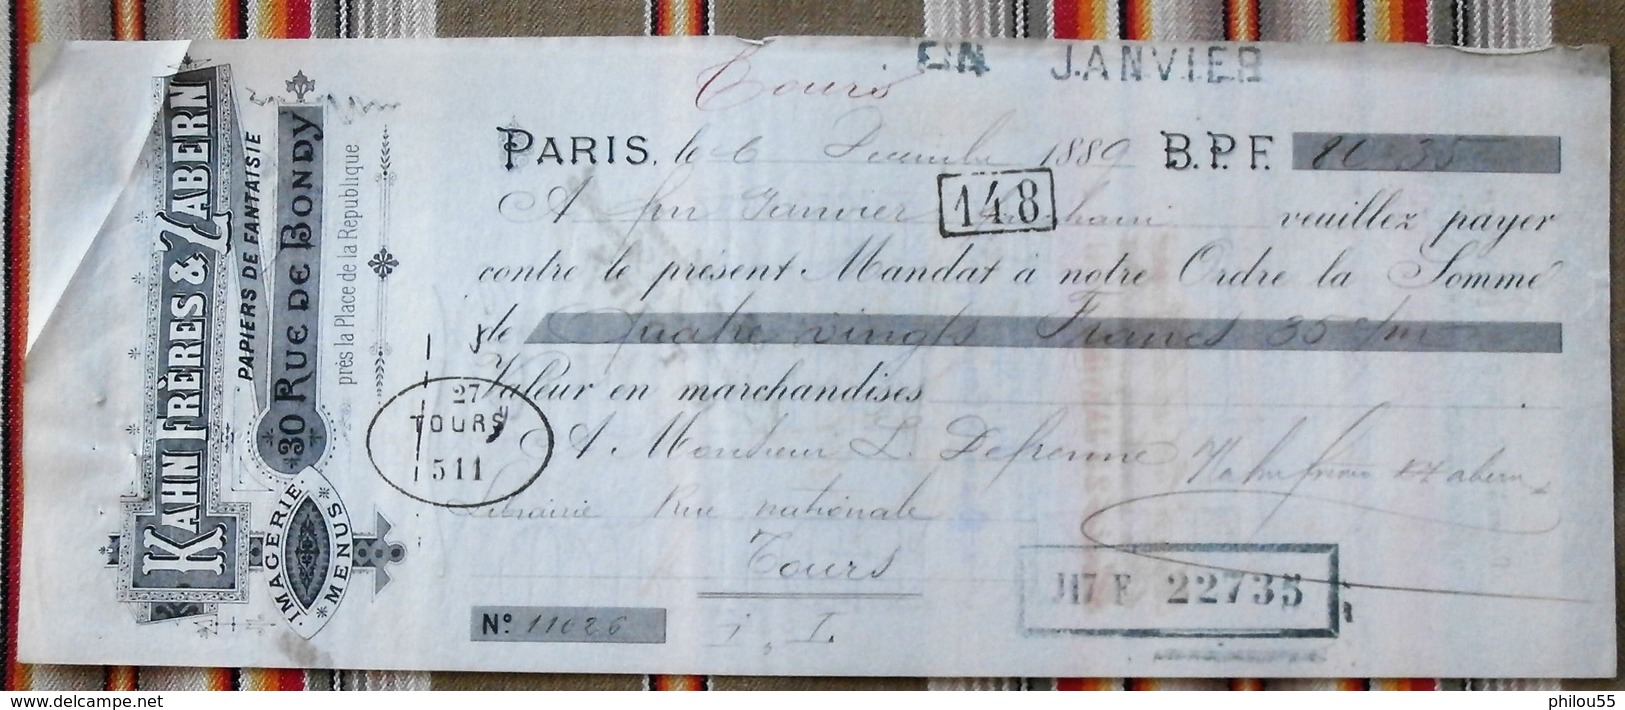 75 PARIS 10e Rue De Bondy  37 TOURS  1889 - Imprimerie & Papeterie